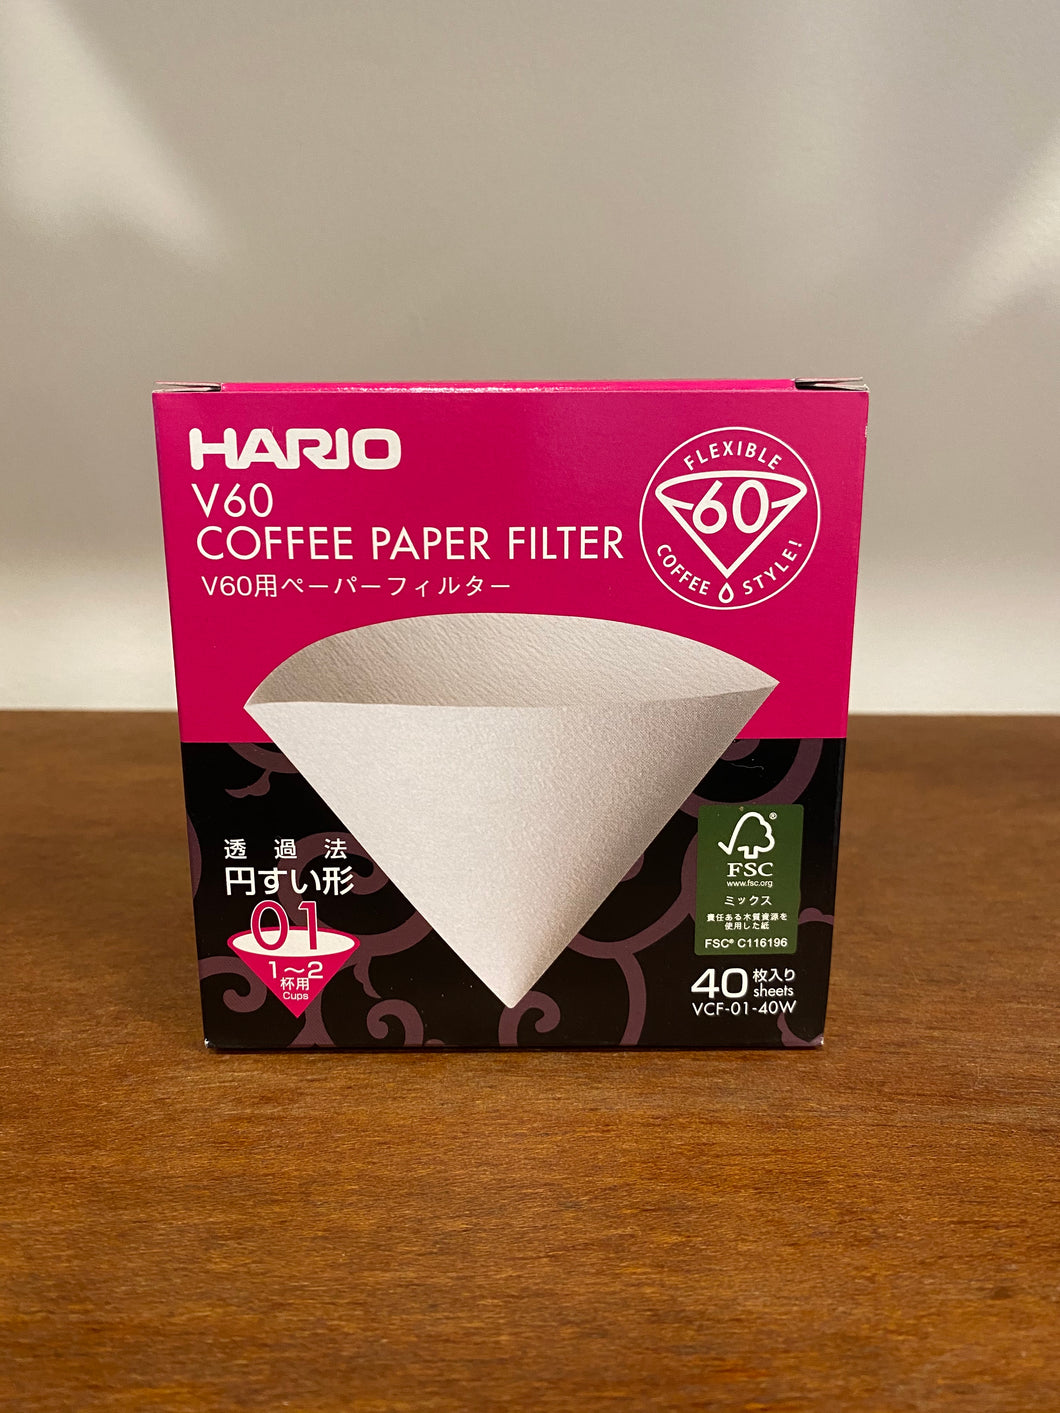 V60 paper filter